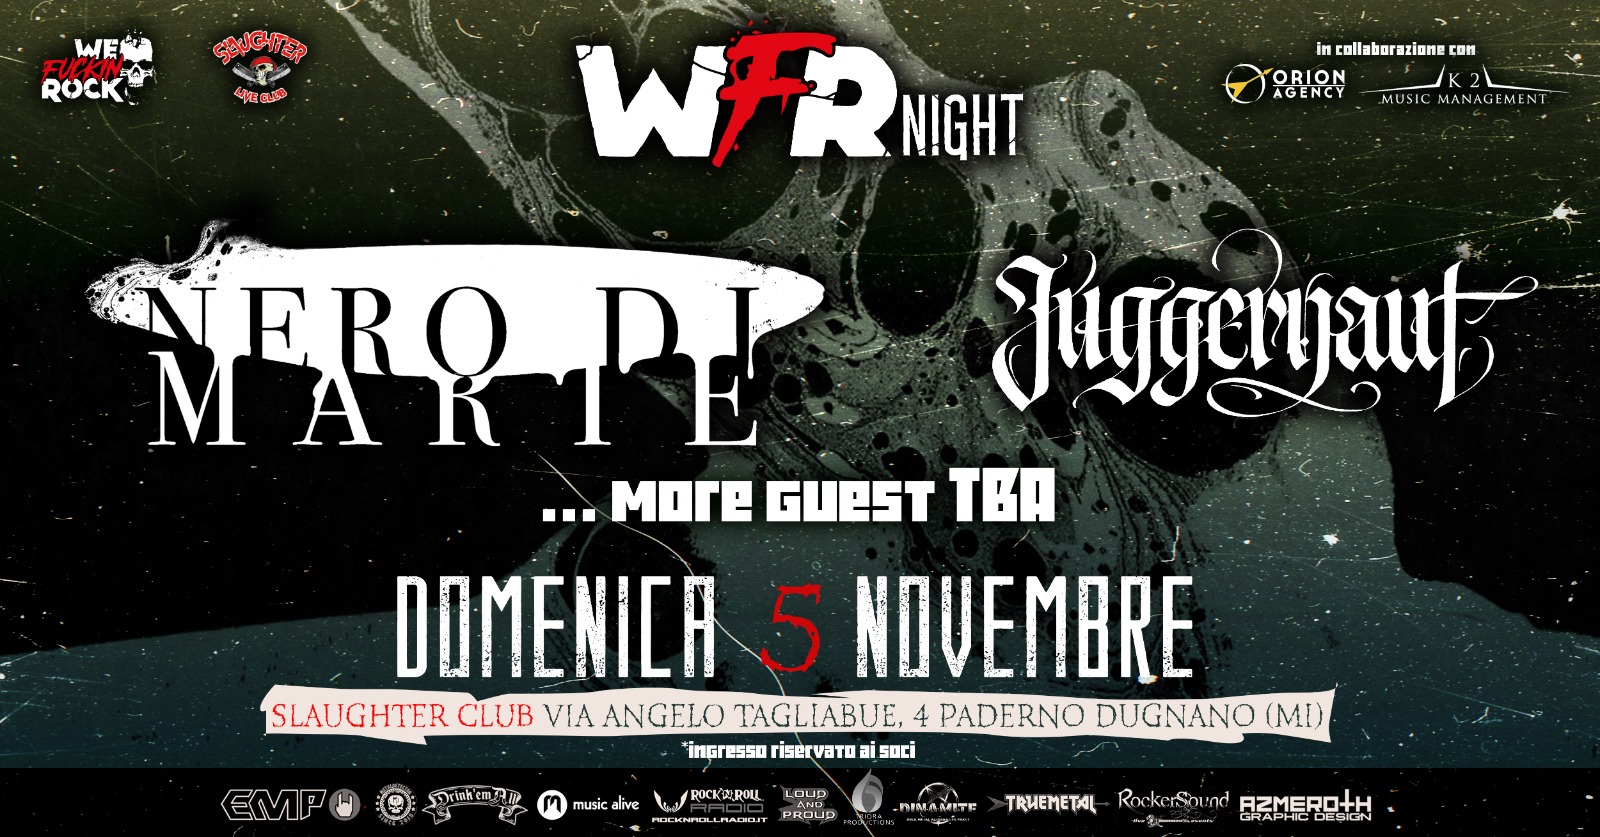 NERO DI MARTE – live per la WFR NIGHT il 5 novembre allo Slaughter